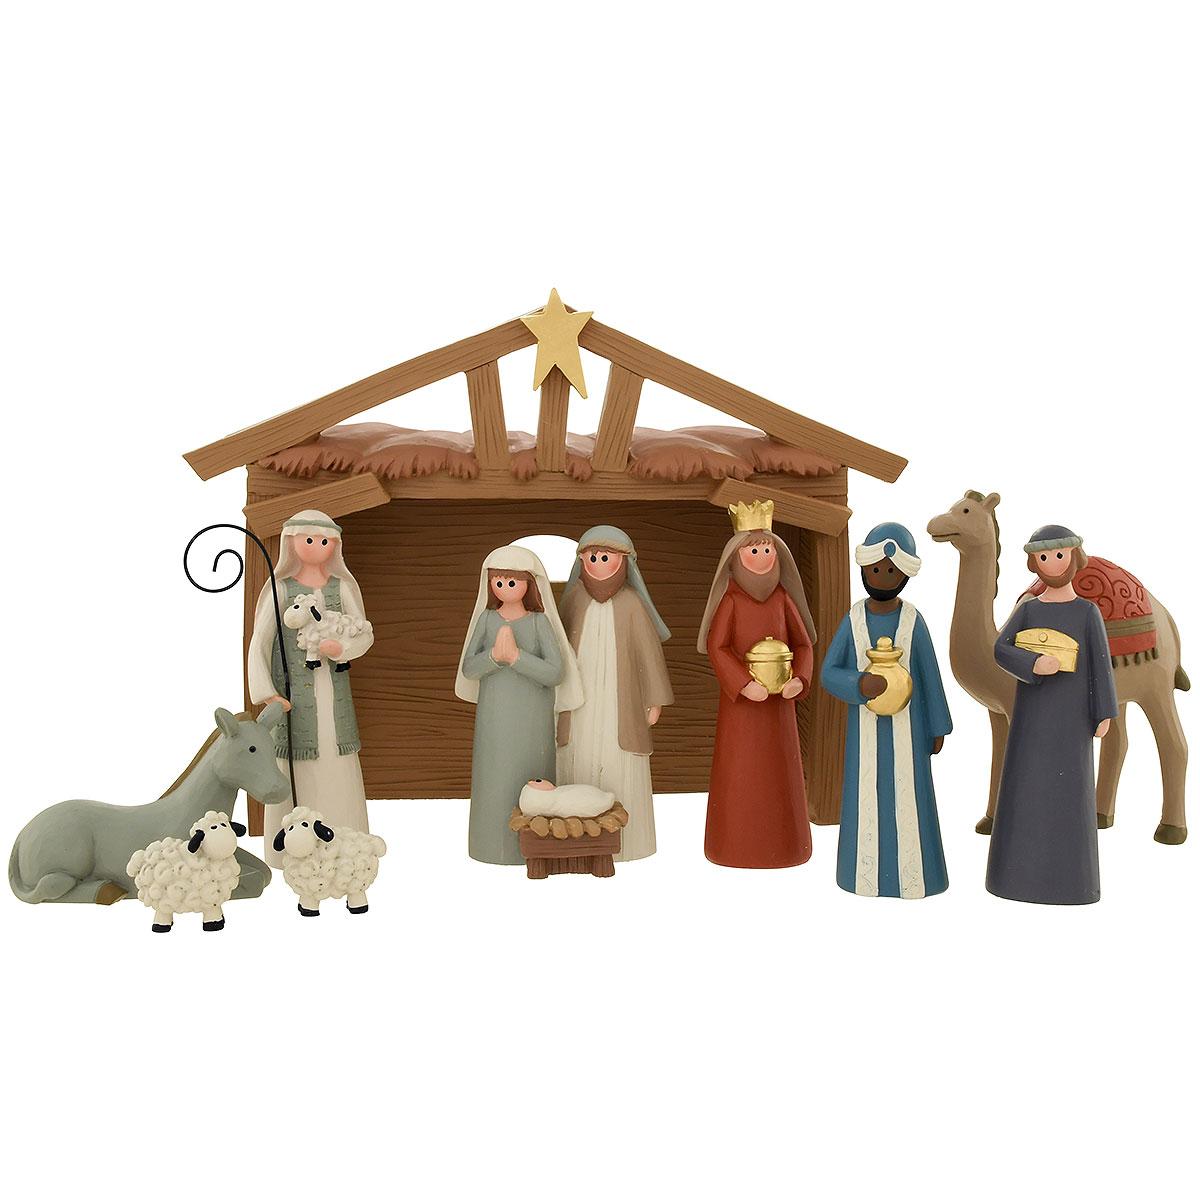 Nativity Scene With Creche 10 Piece